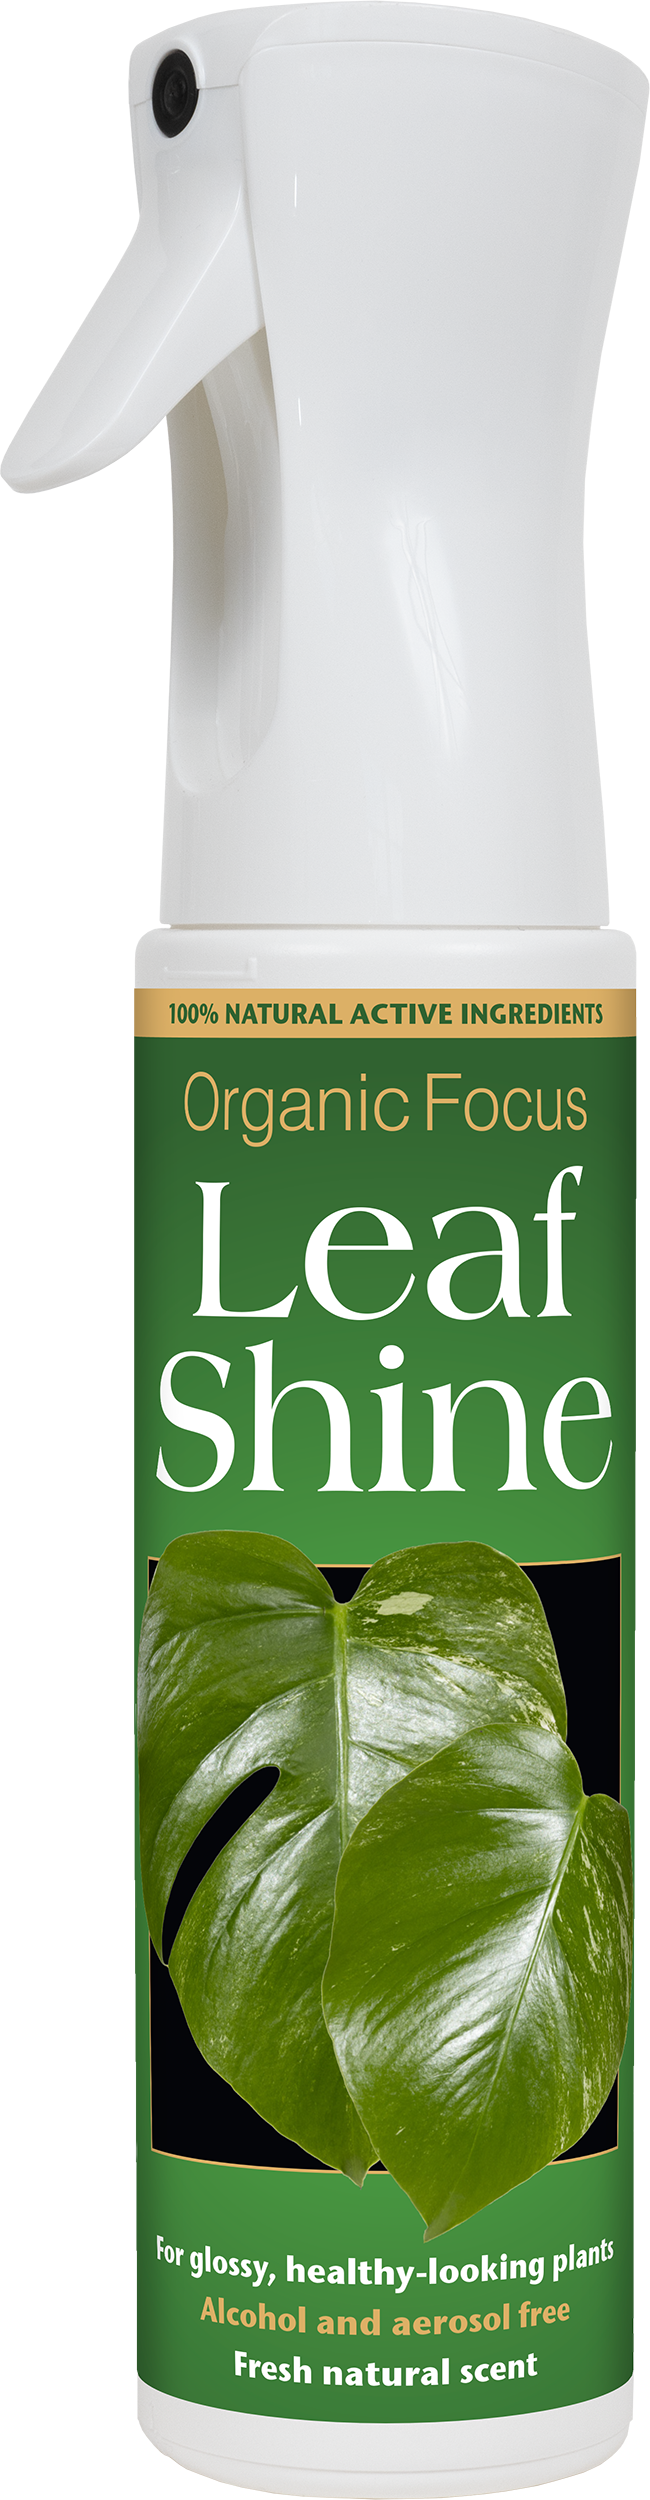 Organic Focus Leaf Shine